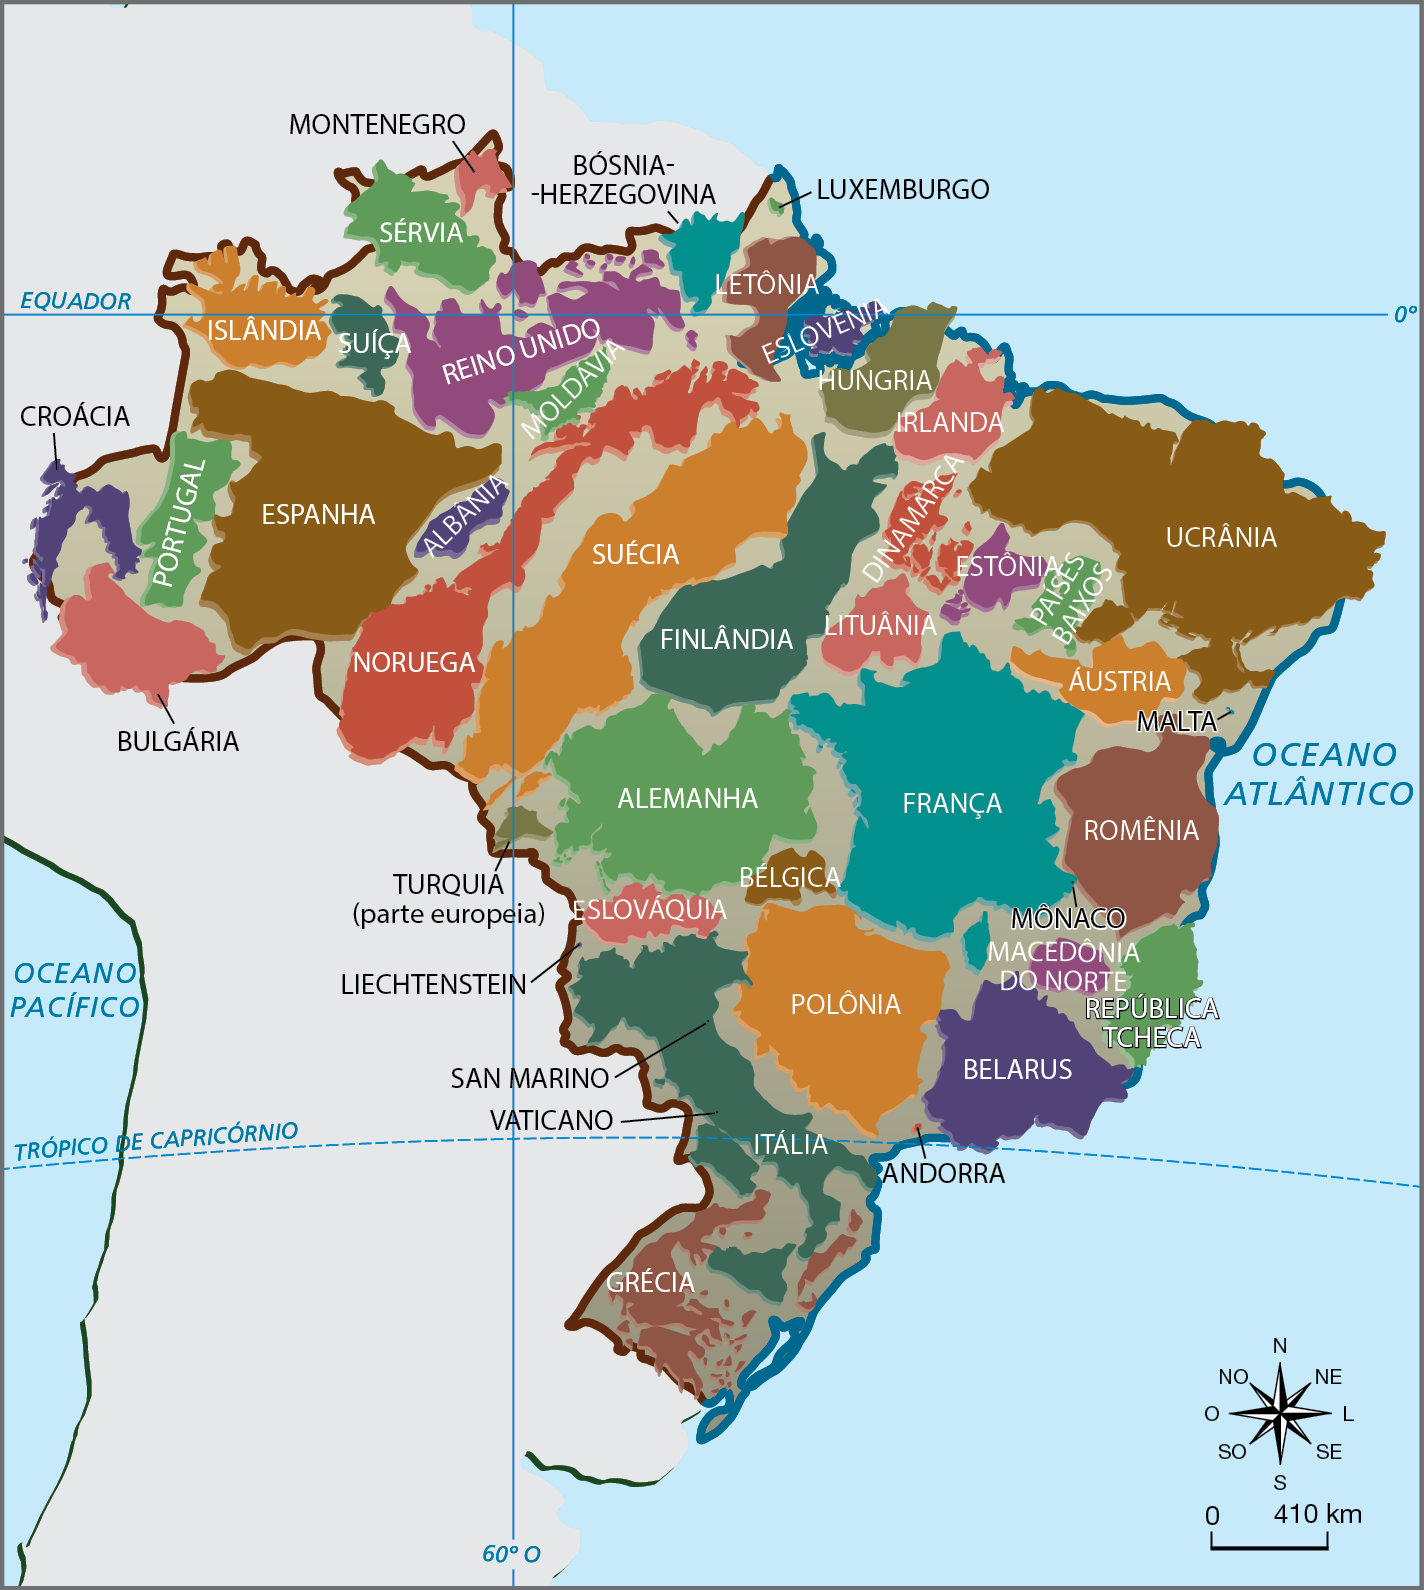 Mapa. 
Mapa do Brasil com mapas de outros países encaixados no território brasileiro. Estão representados os territórios dos seguintes países: GRÉCIA, ITÁLIA, POLÔNIA, ANDORRA, ESLOVÁQUIA, BÉLGICA, LIECHTENSTEIN, SAN MARINO, VATICANO, BELARUS, MACEDÔNIA DO NORTE, REPÚBLICA TCHECA, ROMÊNIA, FRANÇA - MÔNACO, ALEMANHA, MALTA, ÁUSTRIA, FINLÂNDIA, NORUEGA, SUÉCIA, LITUÂNIA, ESTÔNIA, PAÍSES BAIXOS, UCRÂNIA, IRLANDA, DINAMARCA, HUNGRIA, ESLOVÊNIA, LETÔNIA, REINO UNIDO, ALBANIA, MOLDÁVIA, ESPANHA, PORTUGAL, BULGÁRIA, CROÁCIA, ISLÂNDIA, SUÍÇA, SÉRVIA, MONTENEGRO, BÓSNIA-HERZEGOVINA, LUXEMBURGO, TURQUIA (PARTE EUROPEIA). Na parte inferior, rosa dos ventos e escala de 0 a 410 quilômetros.